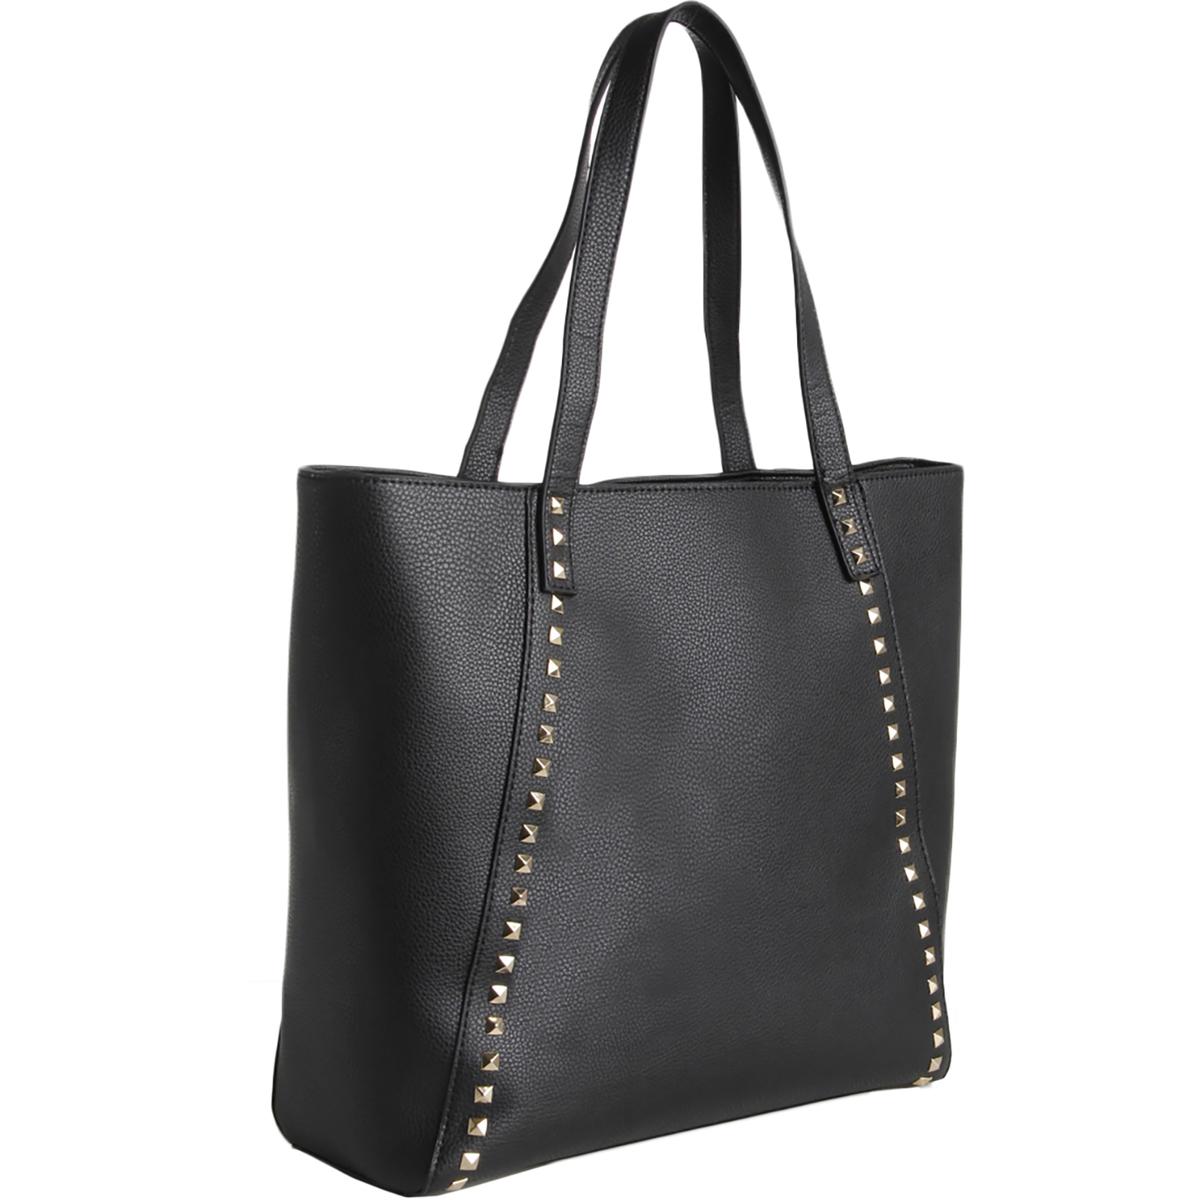 BCBG Paris Womens Black Faux Leather Studded Tote Handbag Purse Large